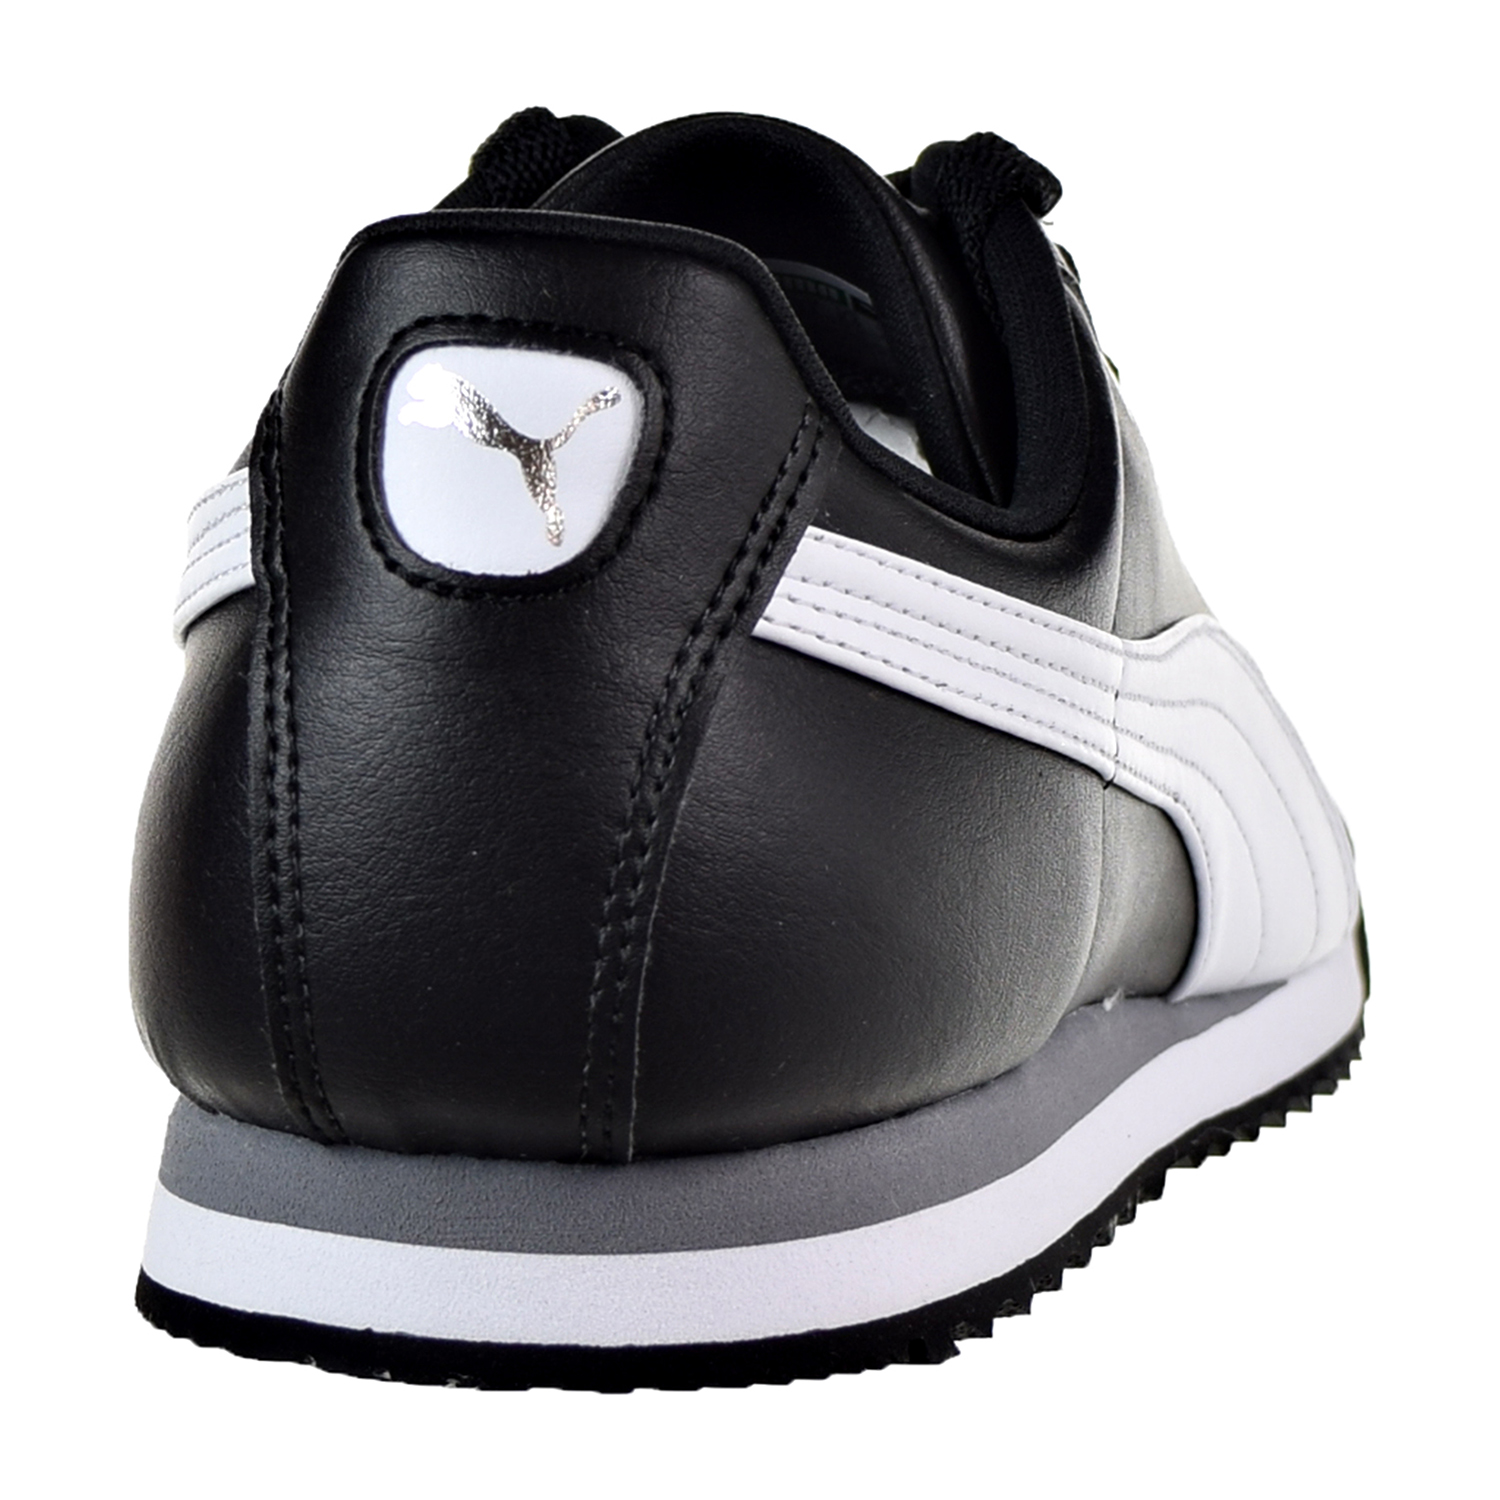 Puma Roma Basic Men's Shoes Black/White/Puma Sliver 353572-11